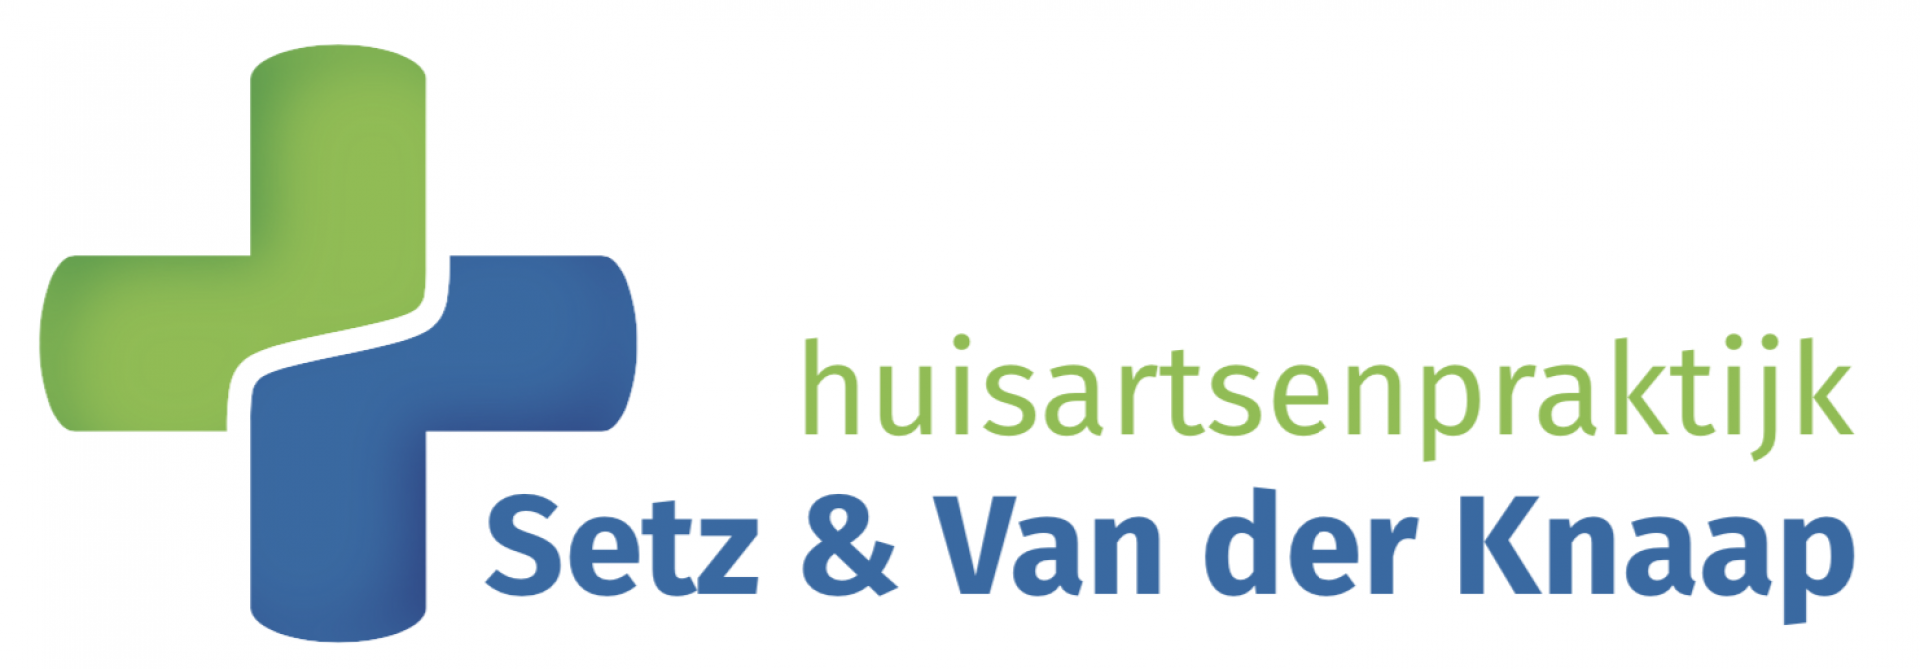 Huisartsenpraktijk Setz & Van der Knaap